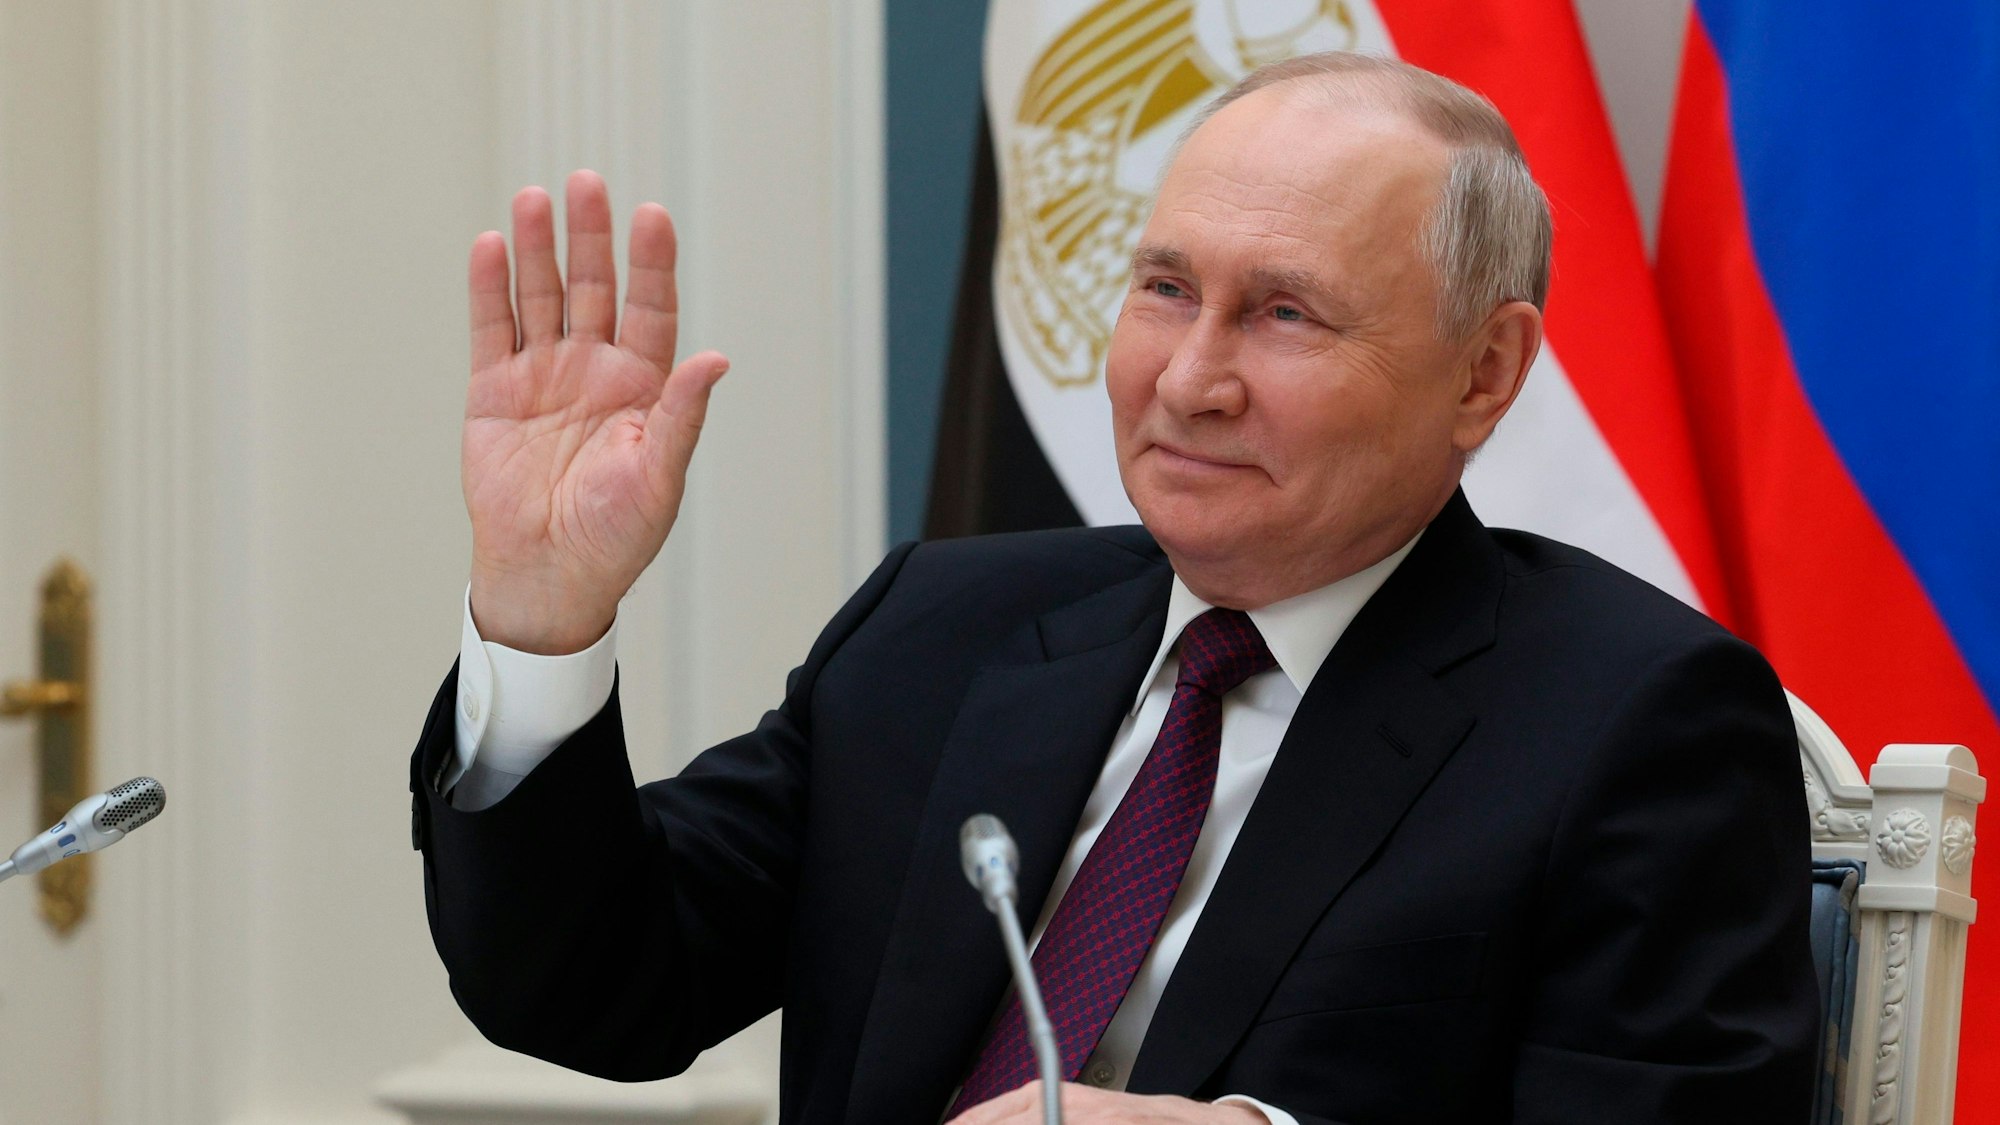 Wladimir Putin, Präsident von Russland, winkt während einer Videokonferenz. Putin kandidiert ab heute offiziell für das Präsidentenamt in der kommenden Wahl.